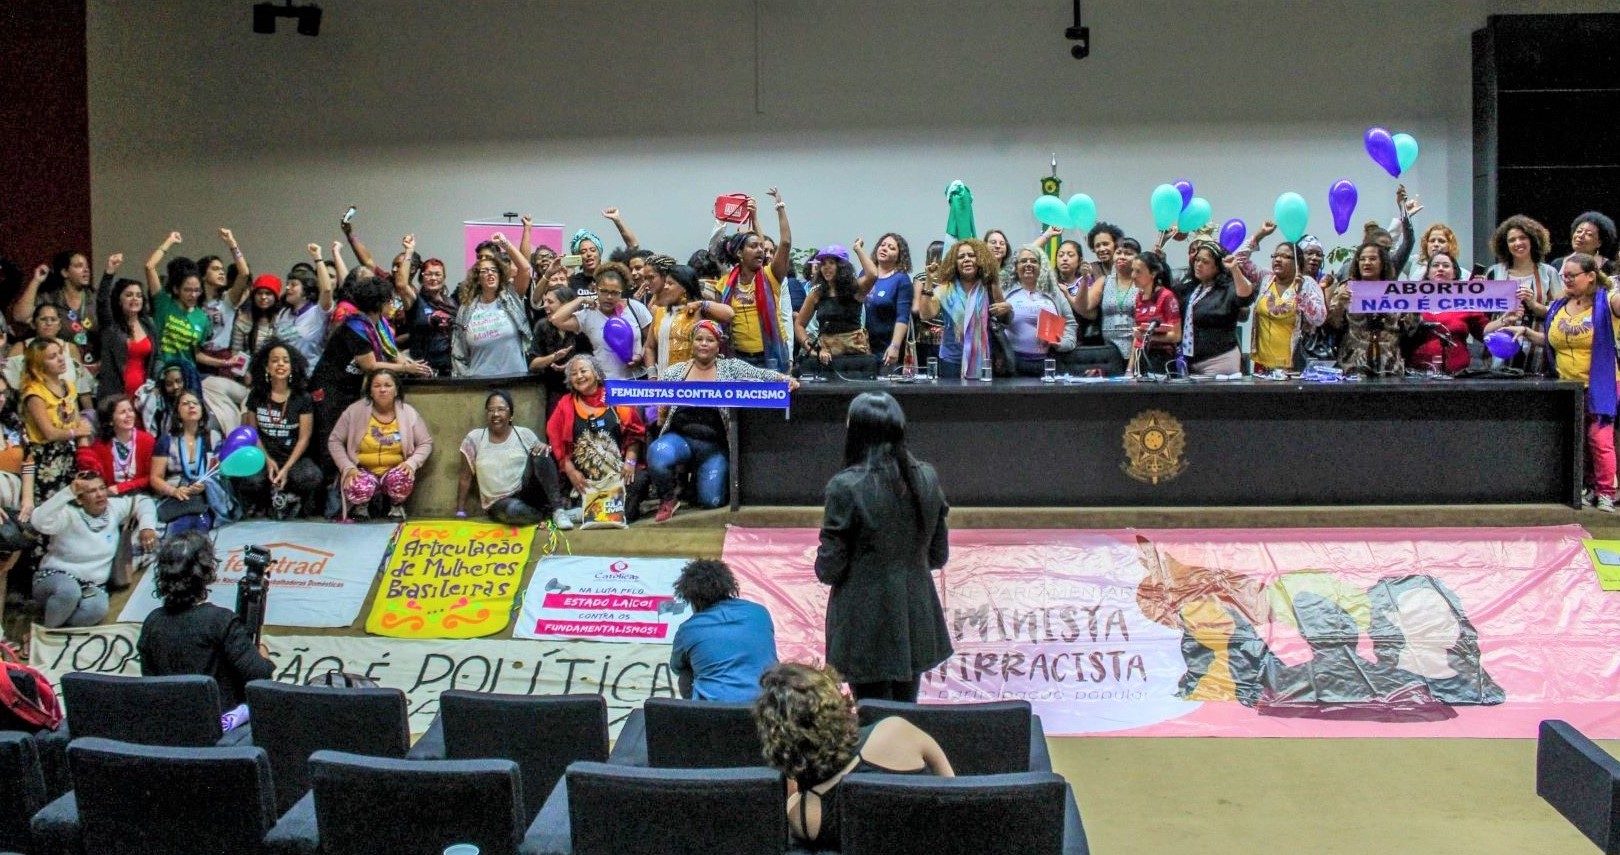 Frente Parlamentar Feminista Antirracista com Participação Popular é lançada na Câmara dos Deputados